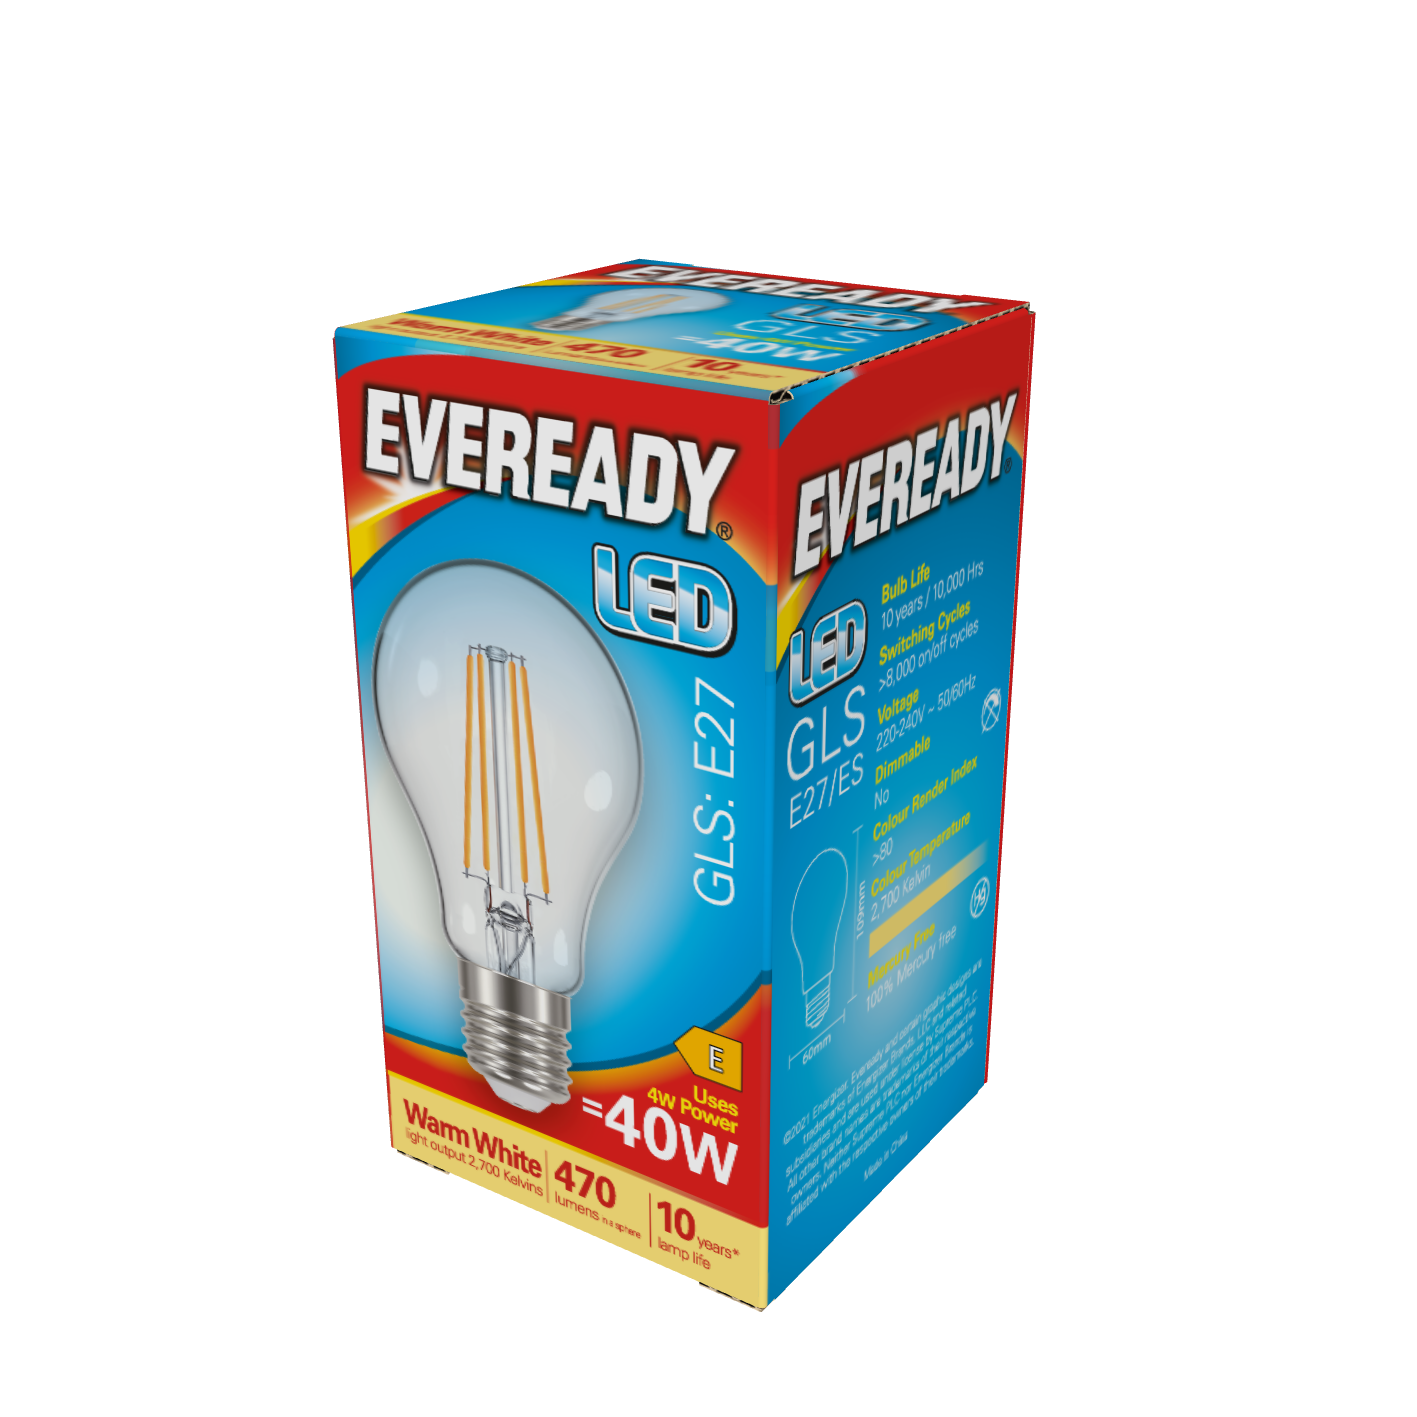 Eveready LED Filament GLS E27 (ES) 470lm 4W 2.700K (Warmweiß) 1er Box